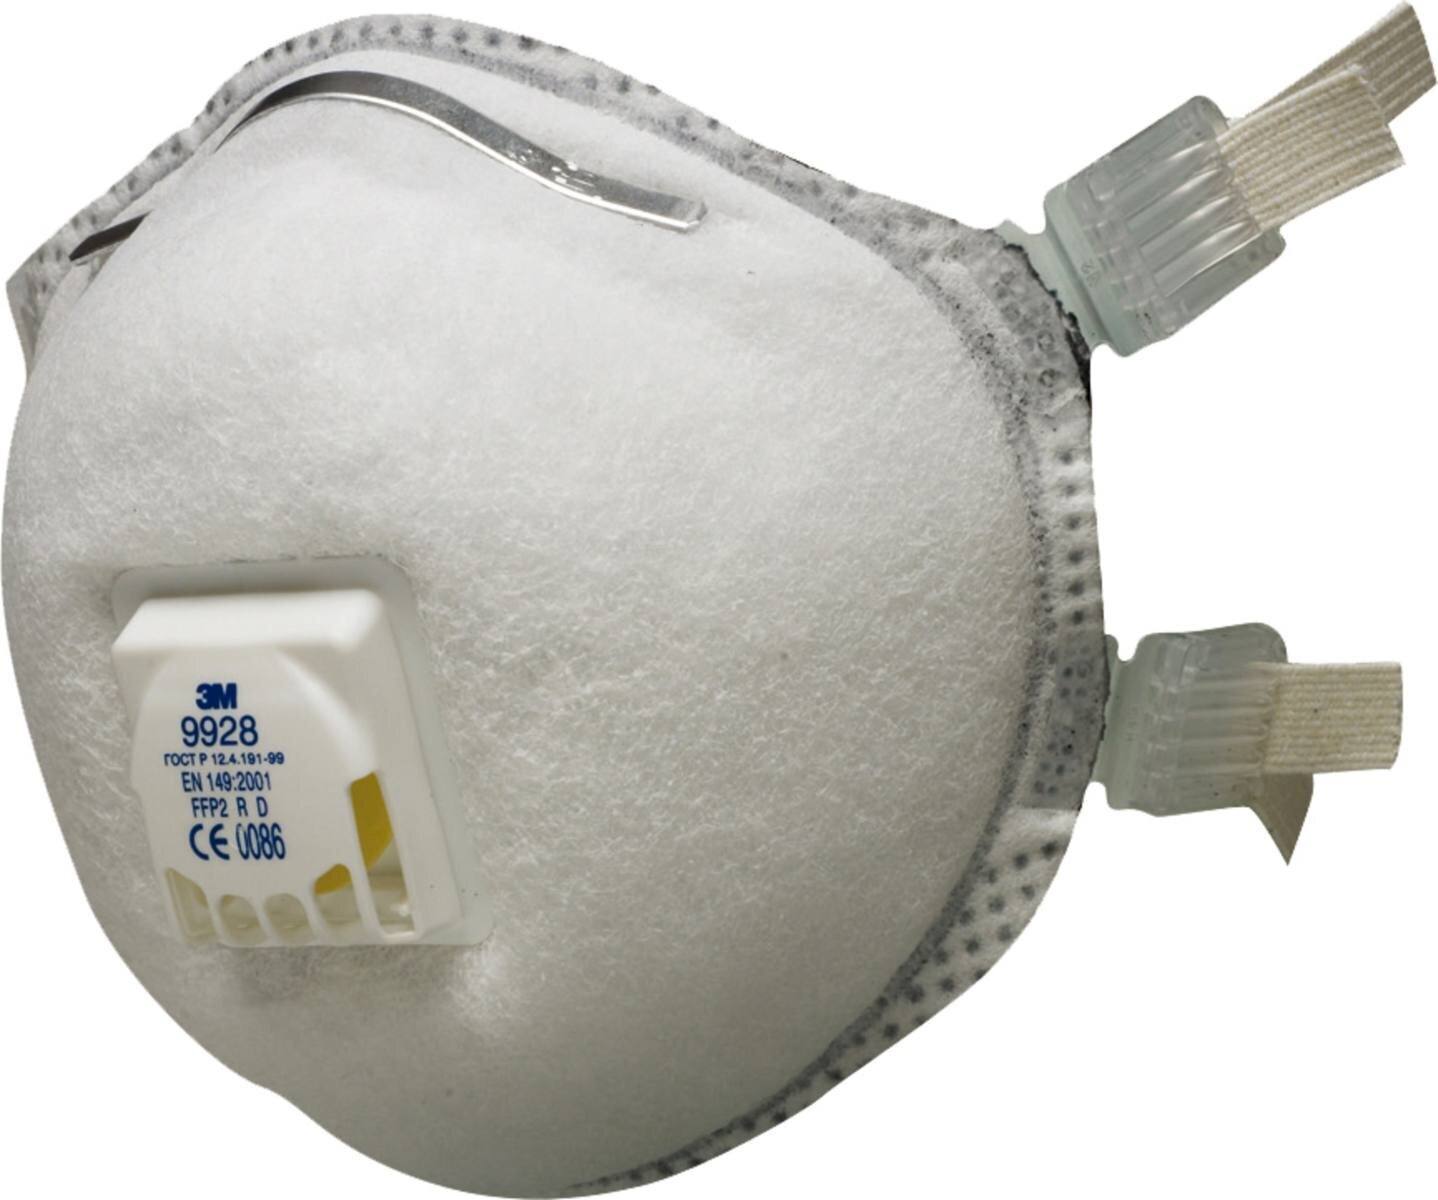 3M 9928 FFP2 R D lasmasker met cool-flow uitademventiel tegen deeltjes tot 10 keer de grenswaarde en tegen ozon. Ideaal voor lassen!